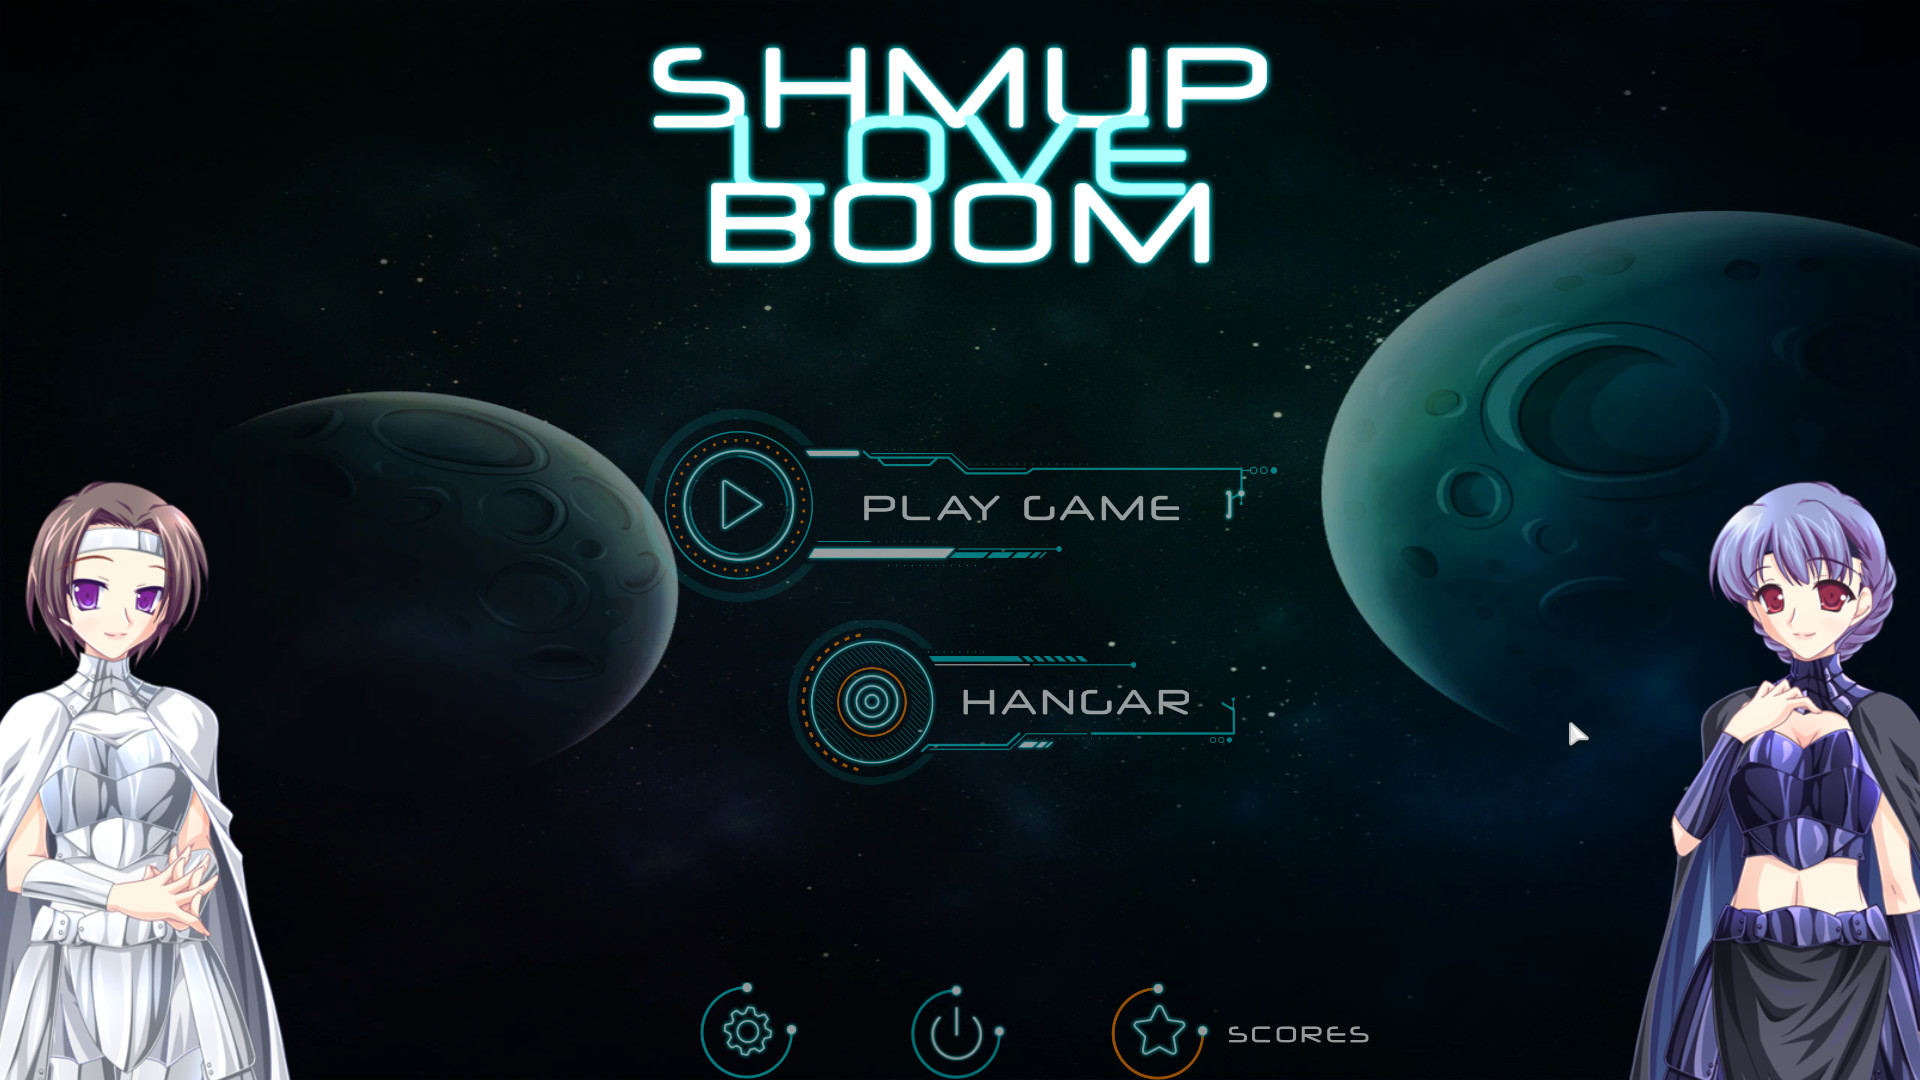 Shmup Love Boom - Soundtrack Featured Screenshot #1